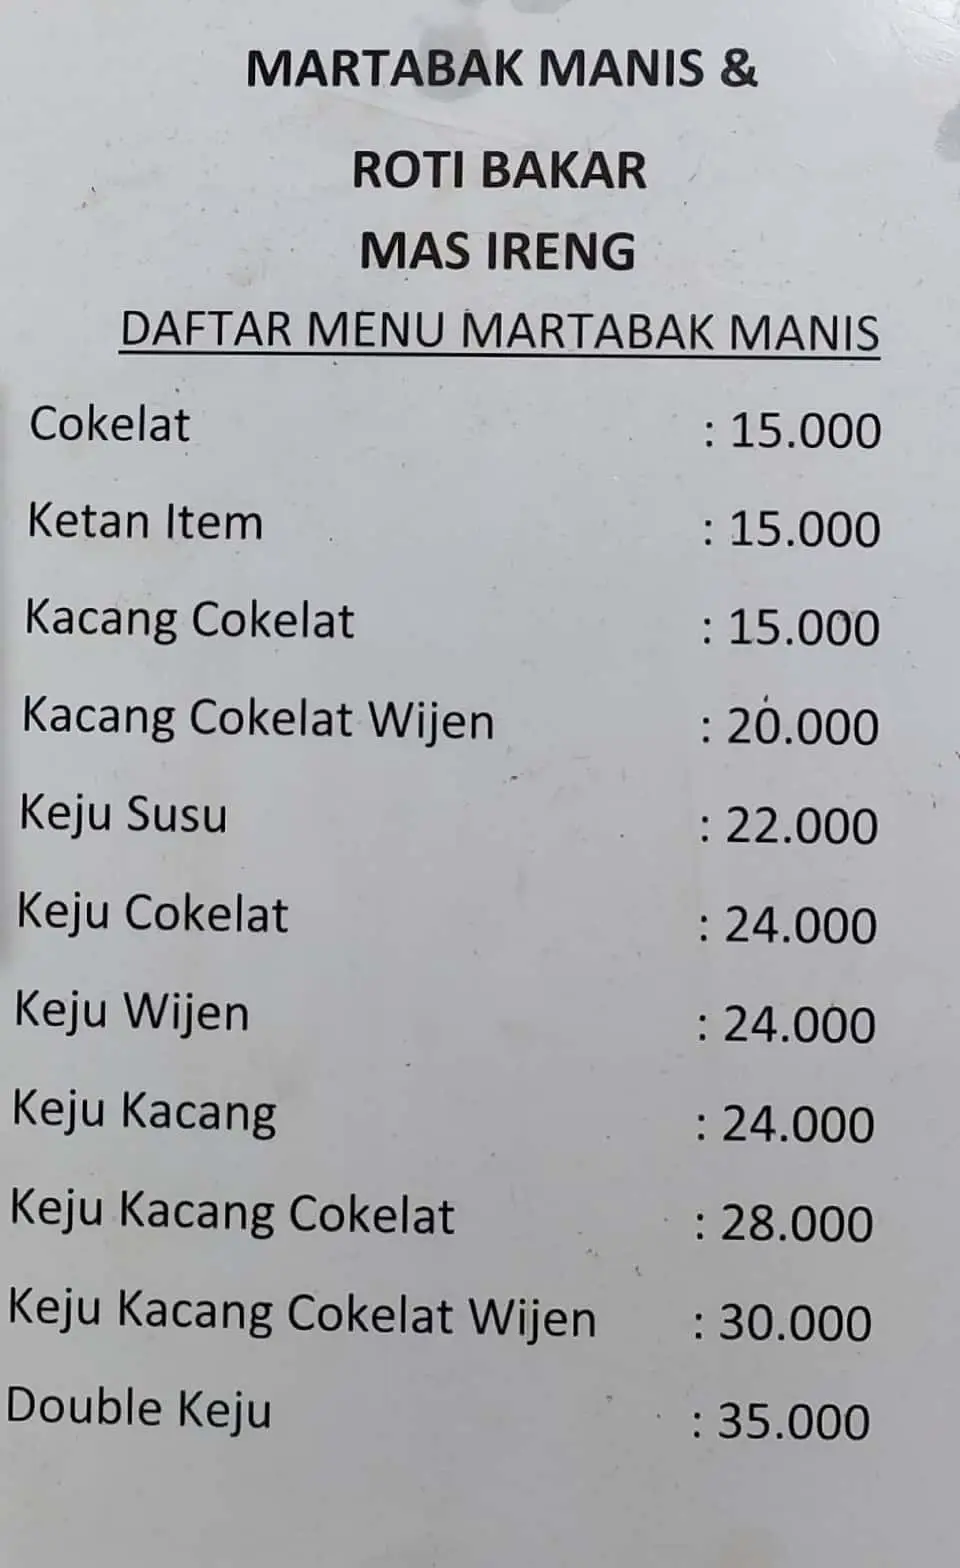 Roti Bakar & Martabak Manis